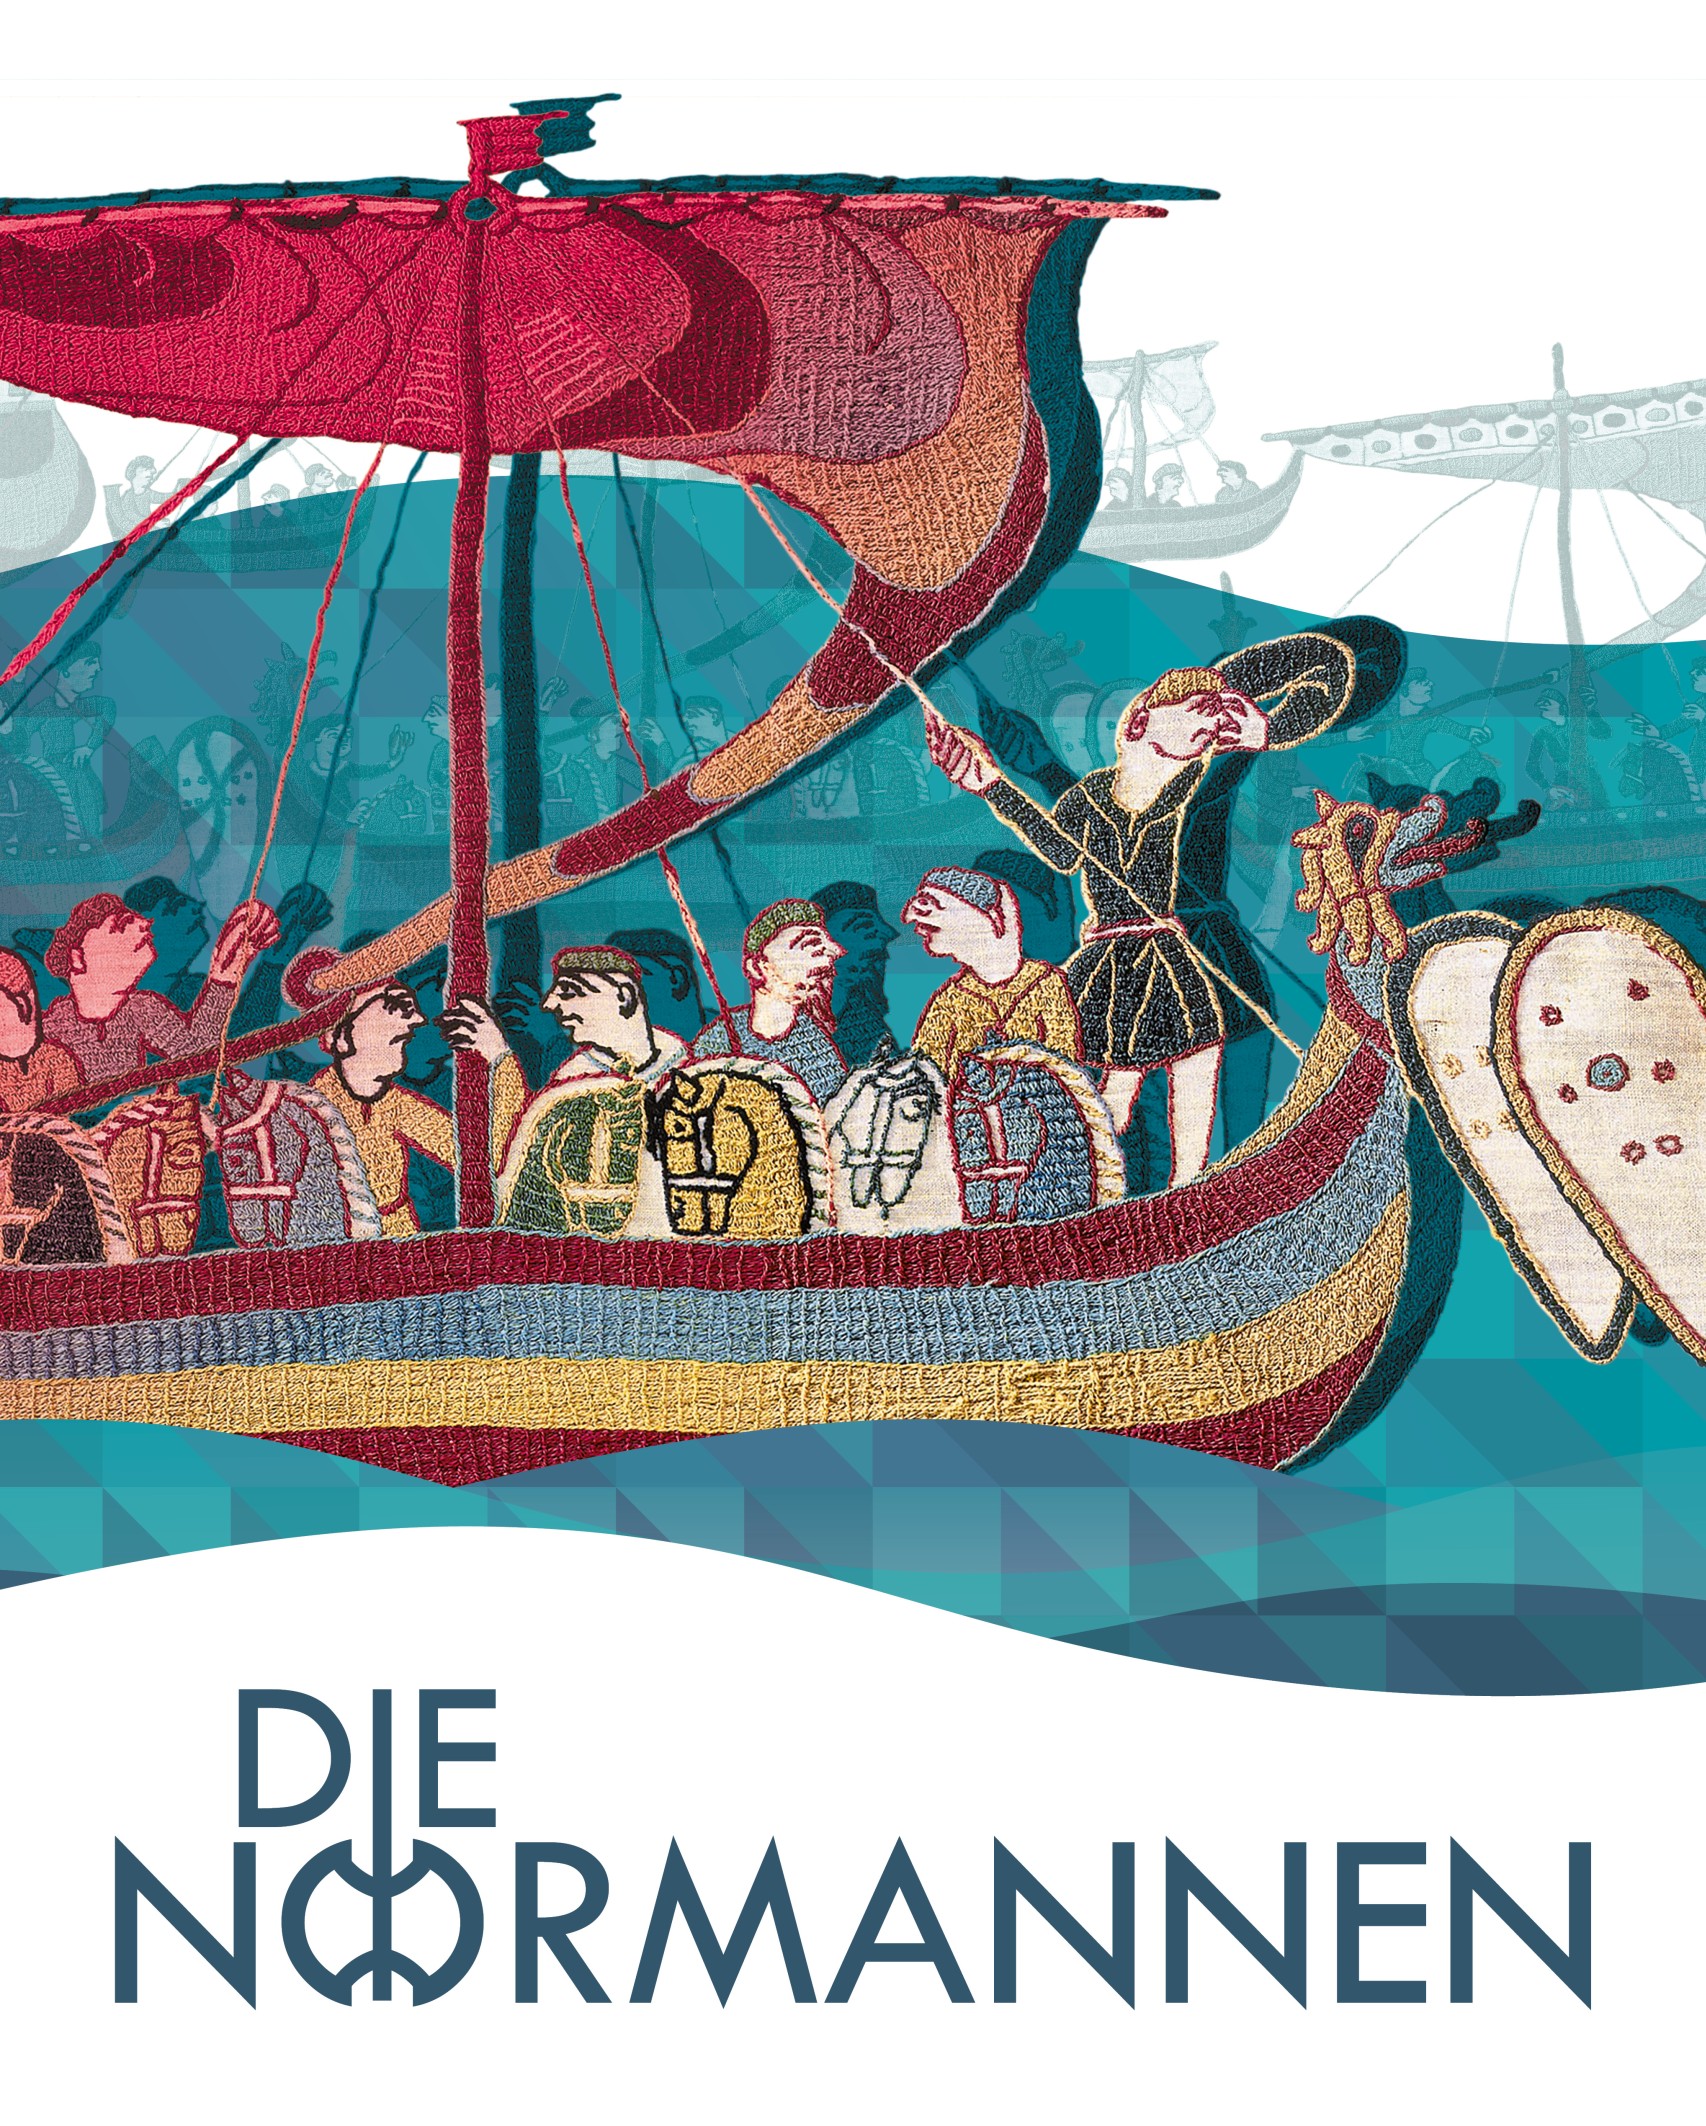 Plakat der Ausstellung "Die Normannen" mit einem Ausschnitt aus dem Teppich von Bayeux. Zu sehen ist ein Wikingerschiff mit Besatzung.